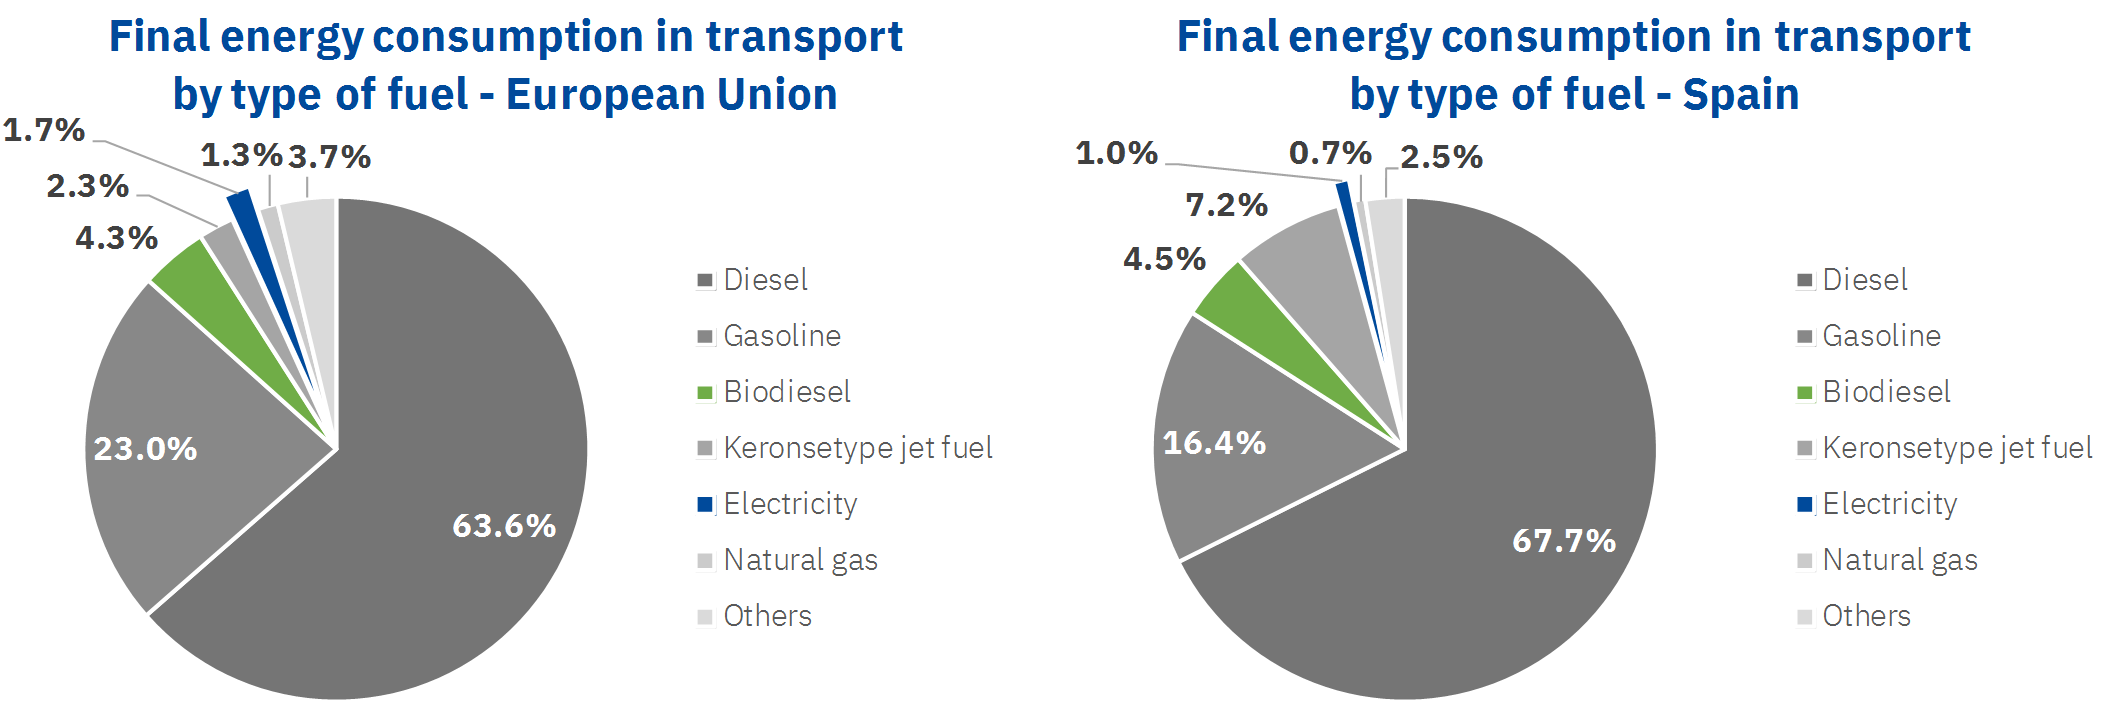 AleaSoft - final energy consumption transport fuel type european union spain